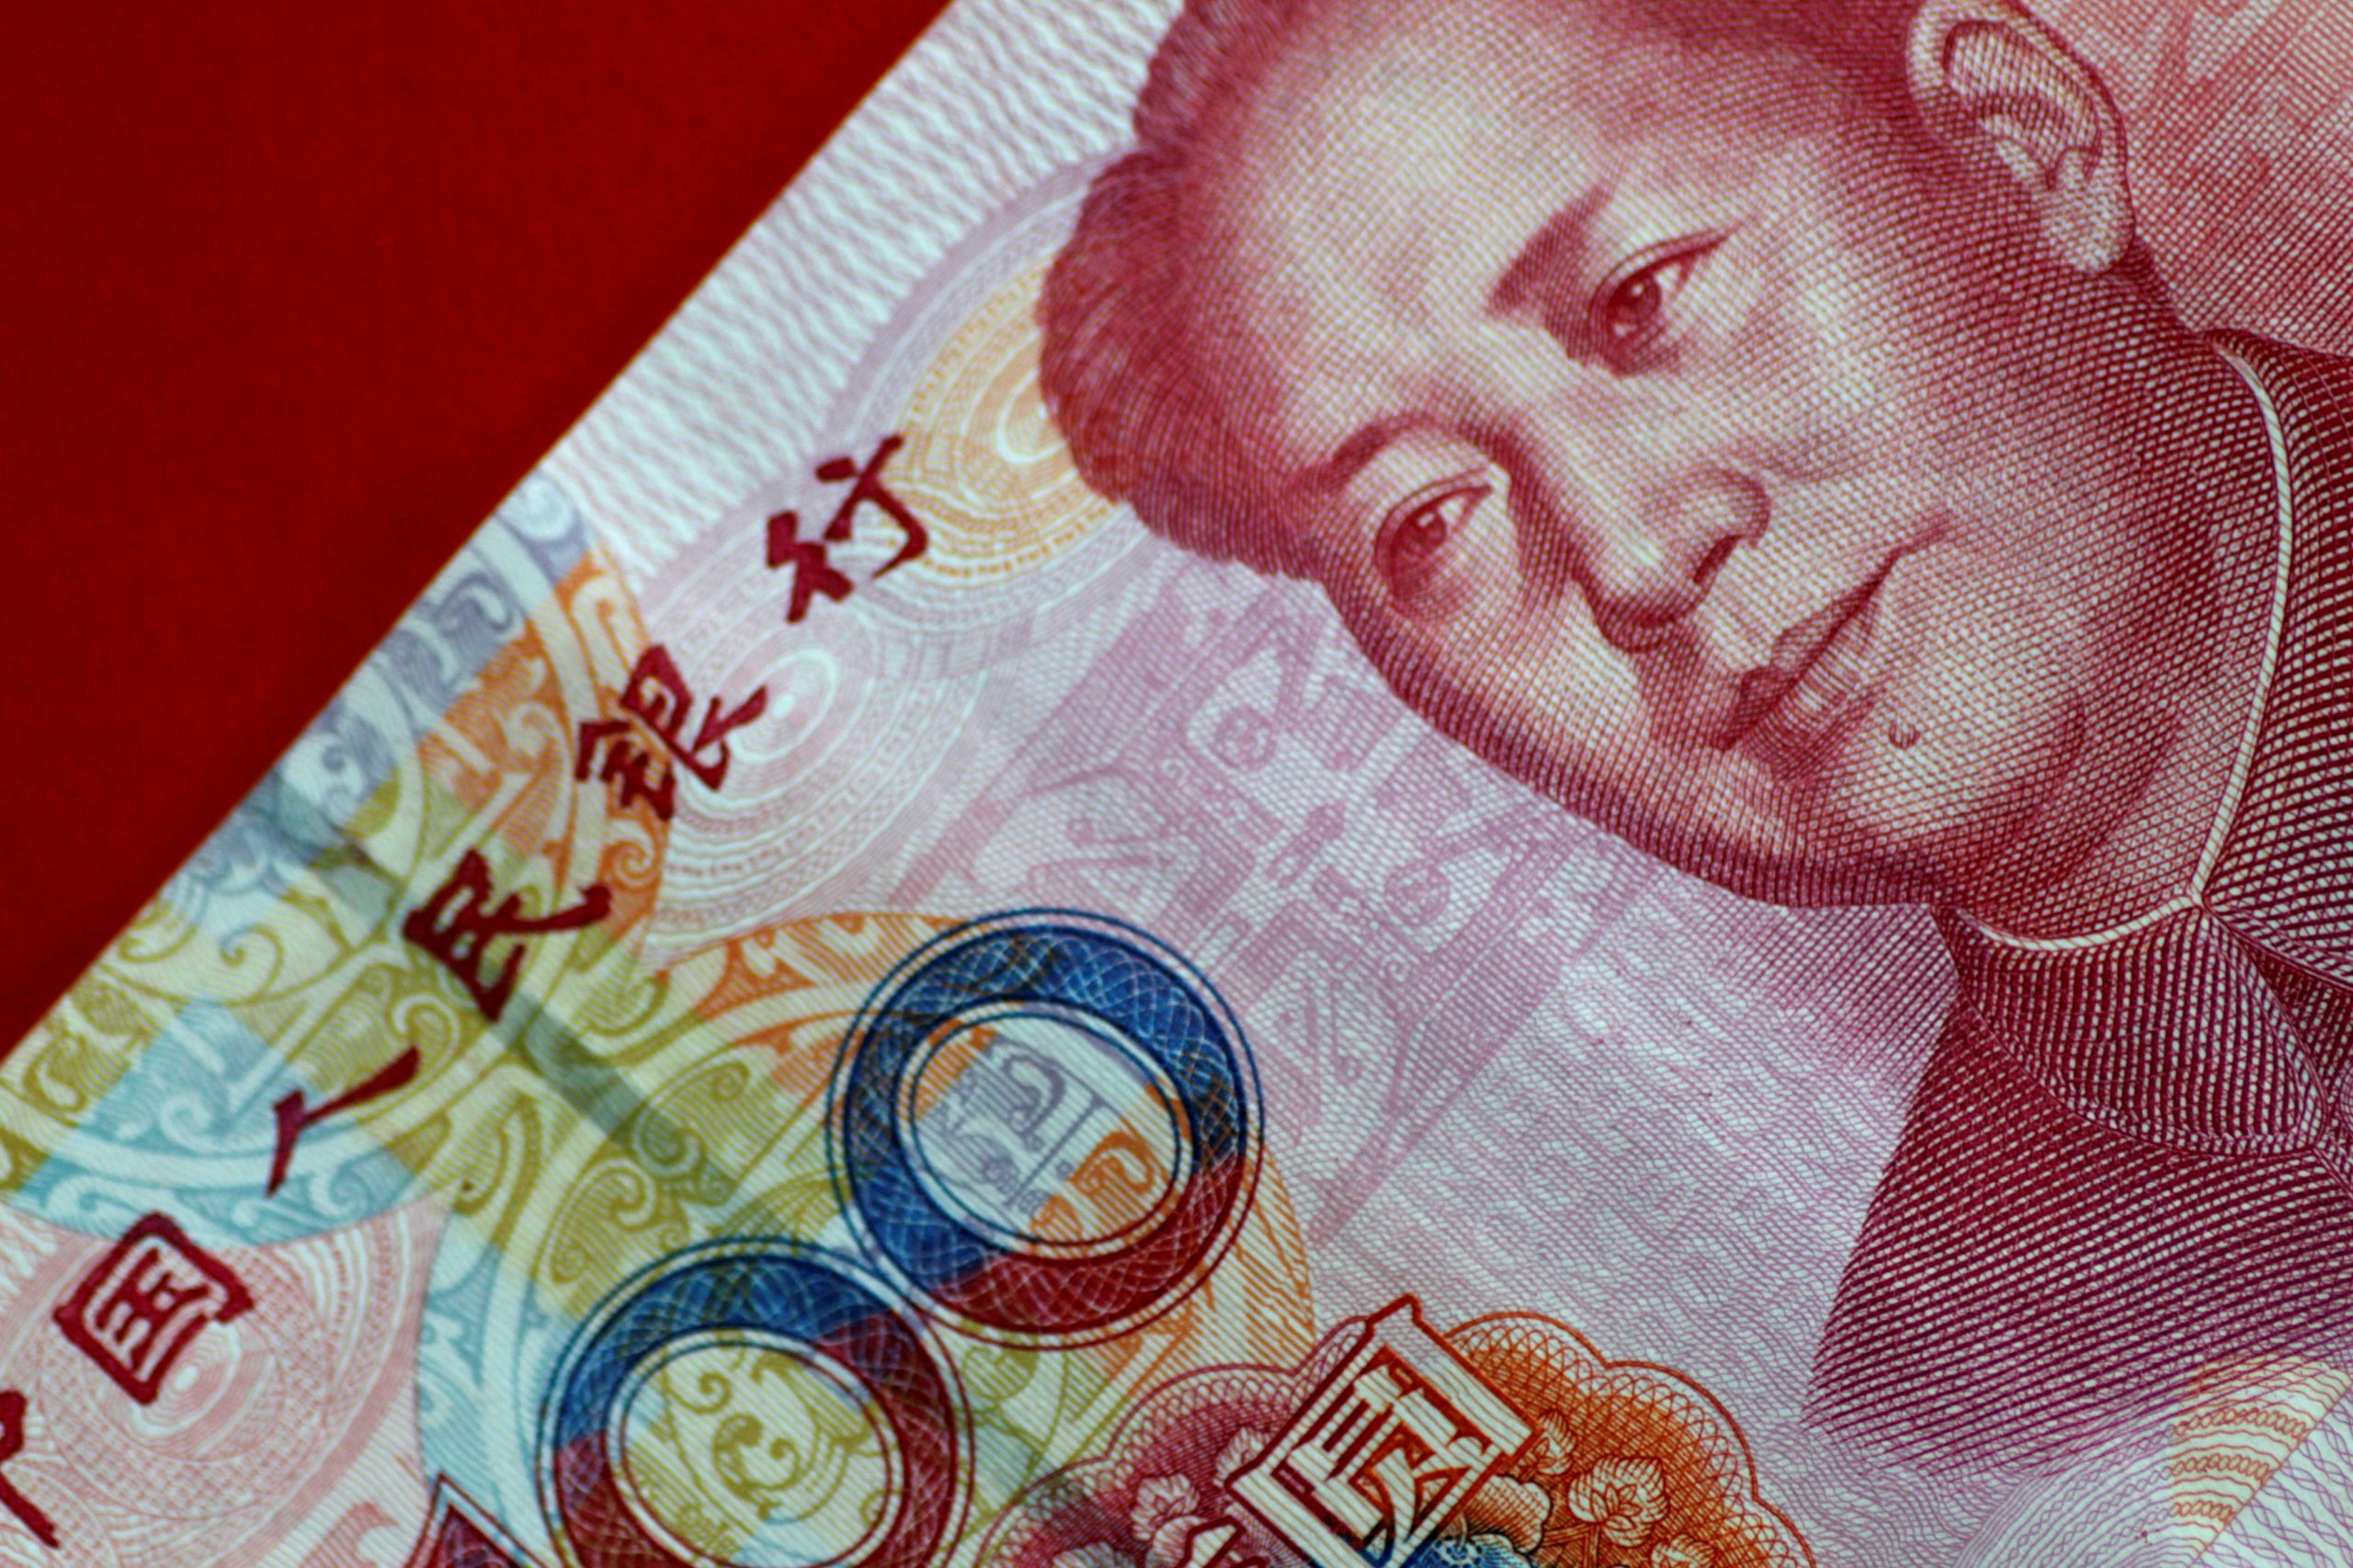 Κίνα: Αύξηση 7,4% στο ισοζύγιο των δανείων στη Σανγκάη